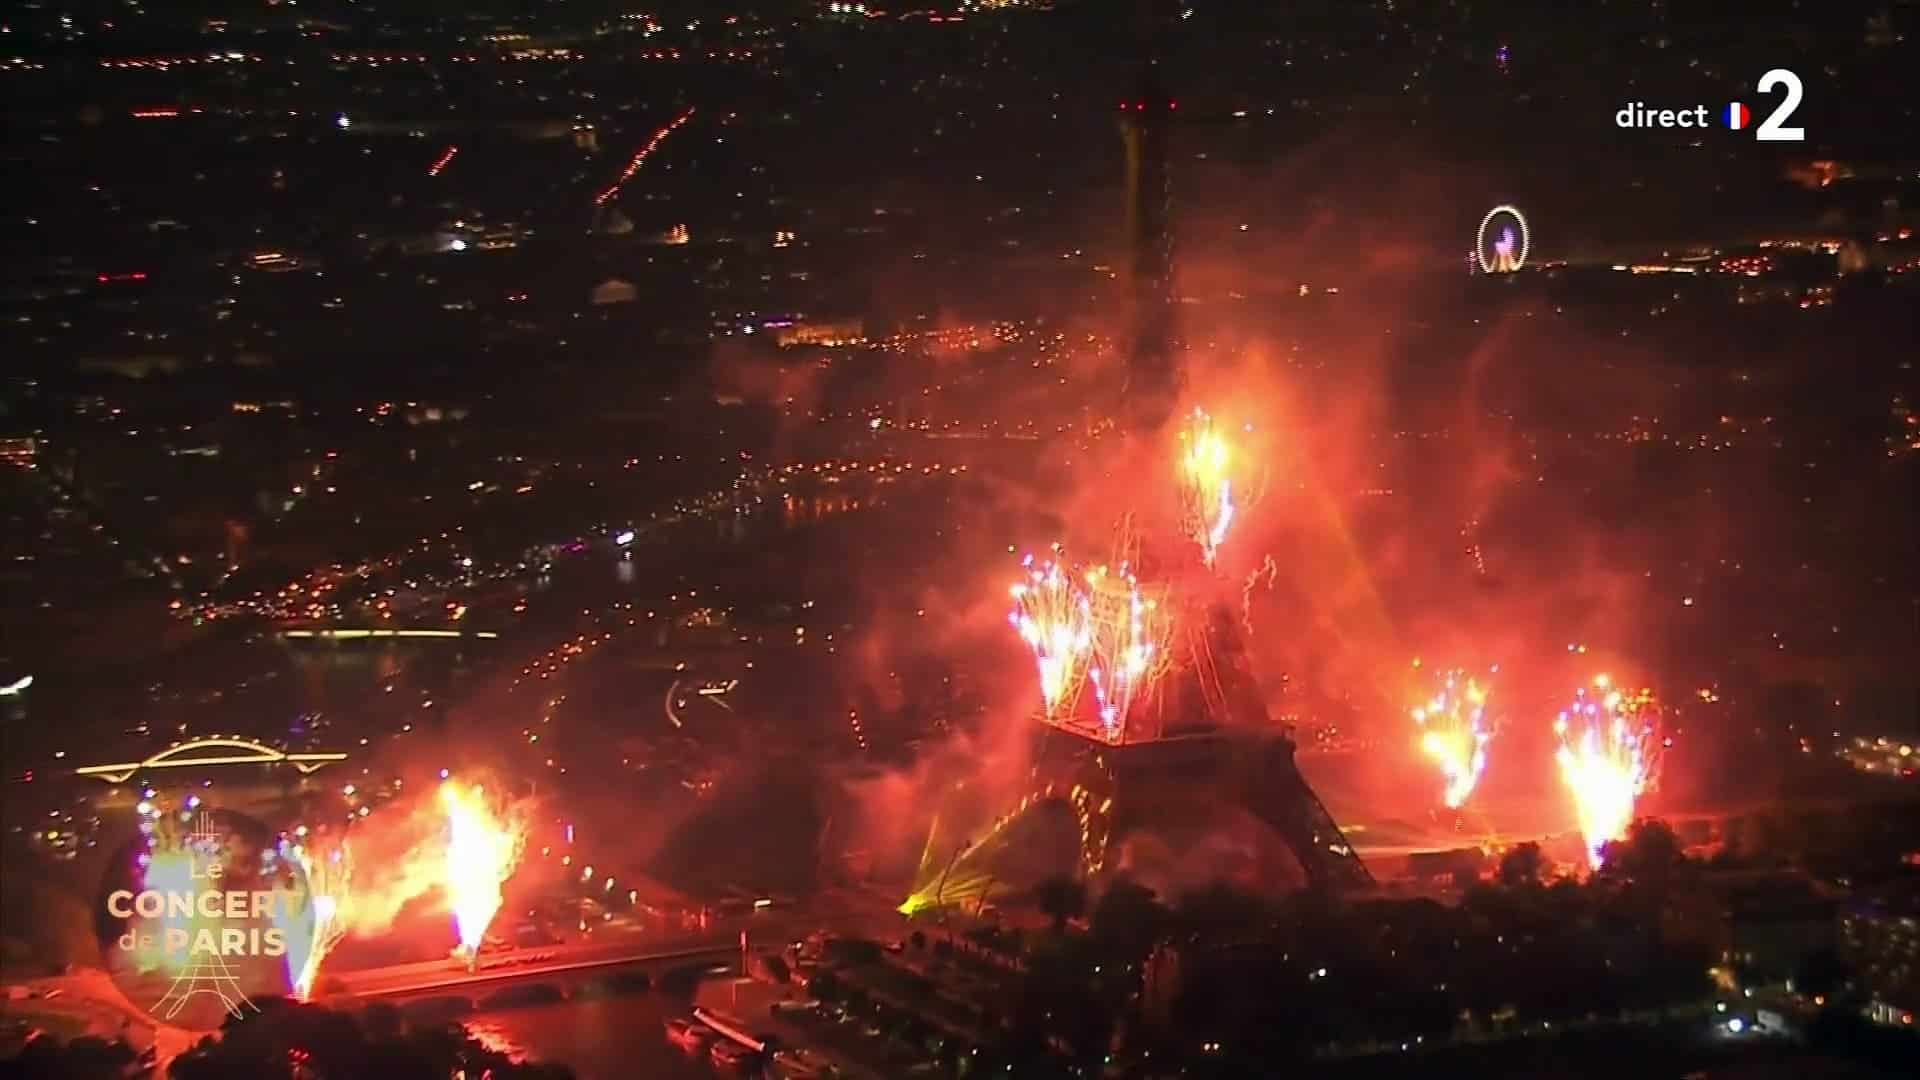 Le Feu d’artifice 2021 de la Tour Eiffel de Paris sur Daft Punk